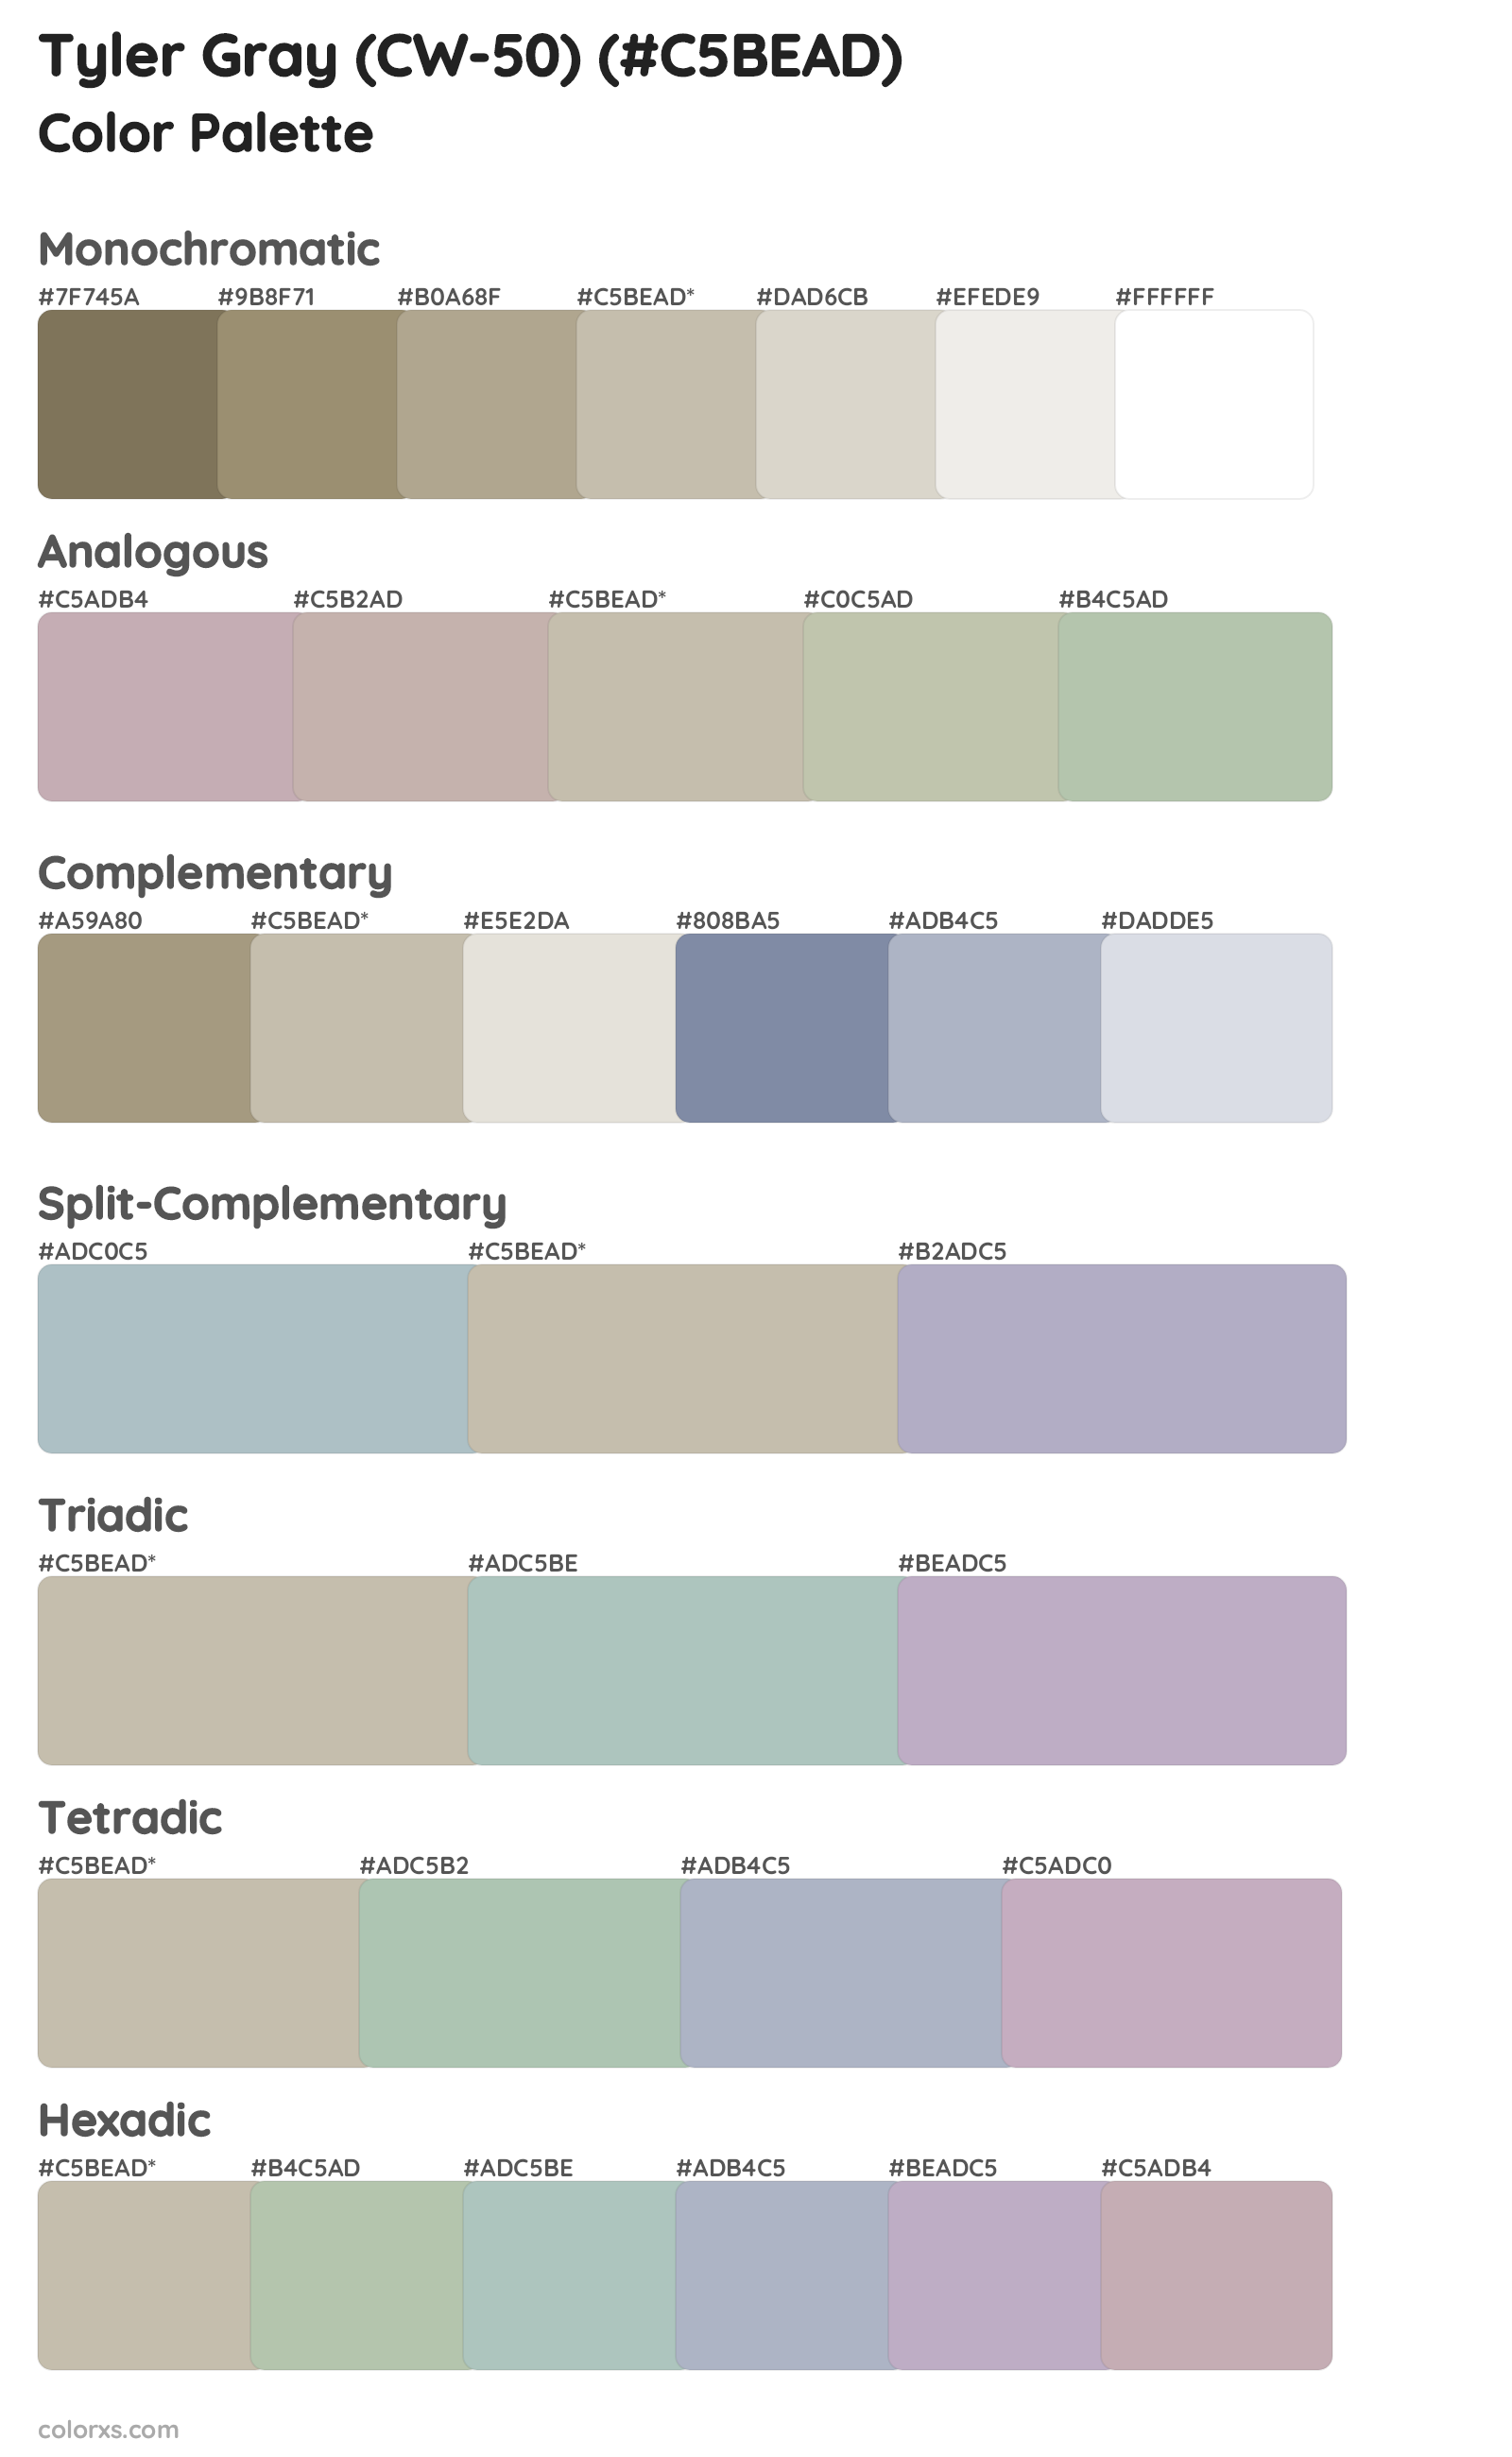 Tyler Gray (CW-50) Color Scheme Palettes